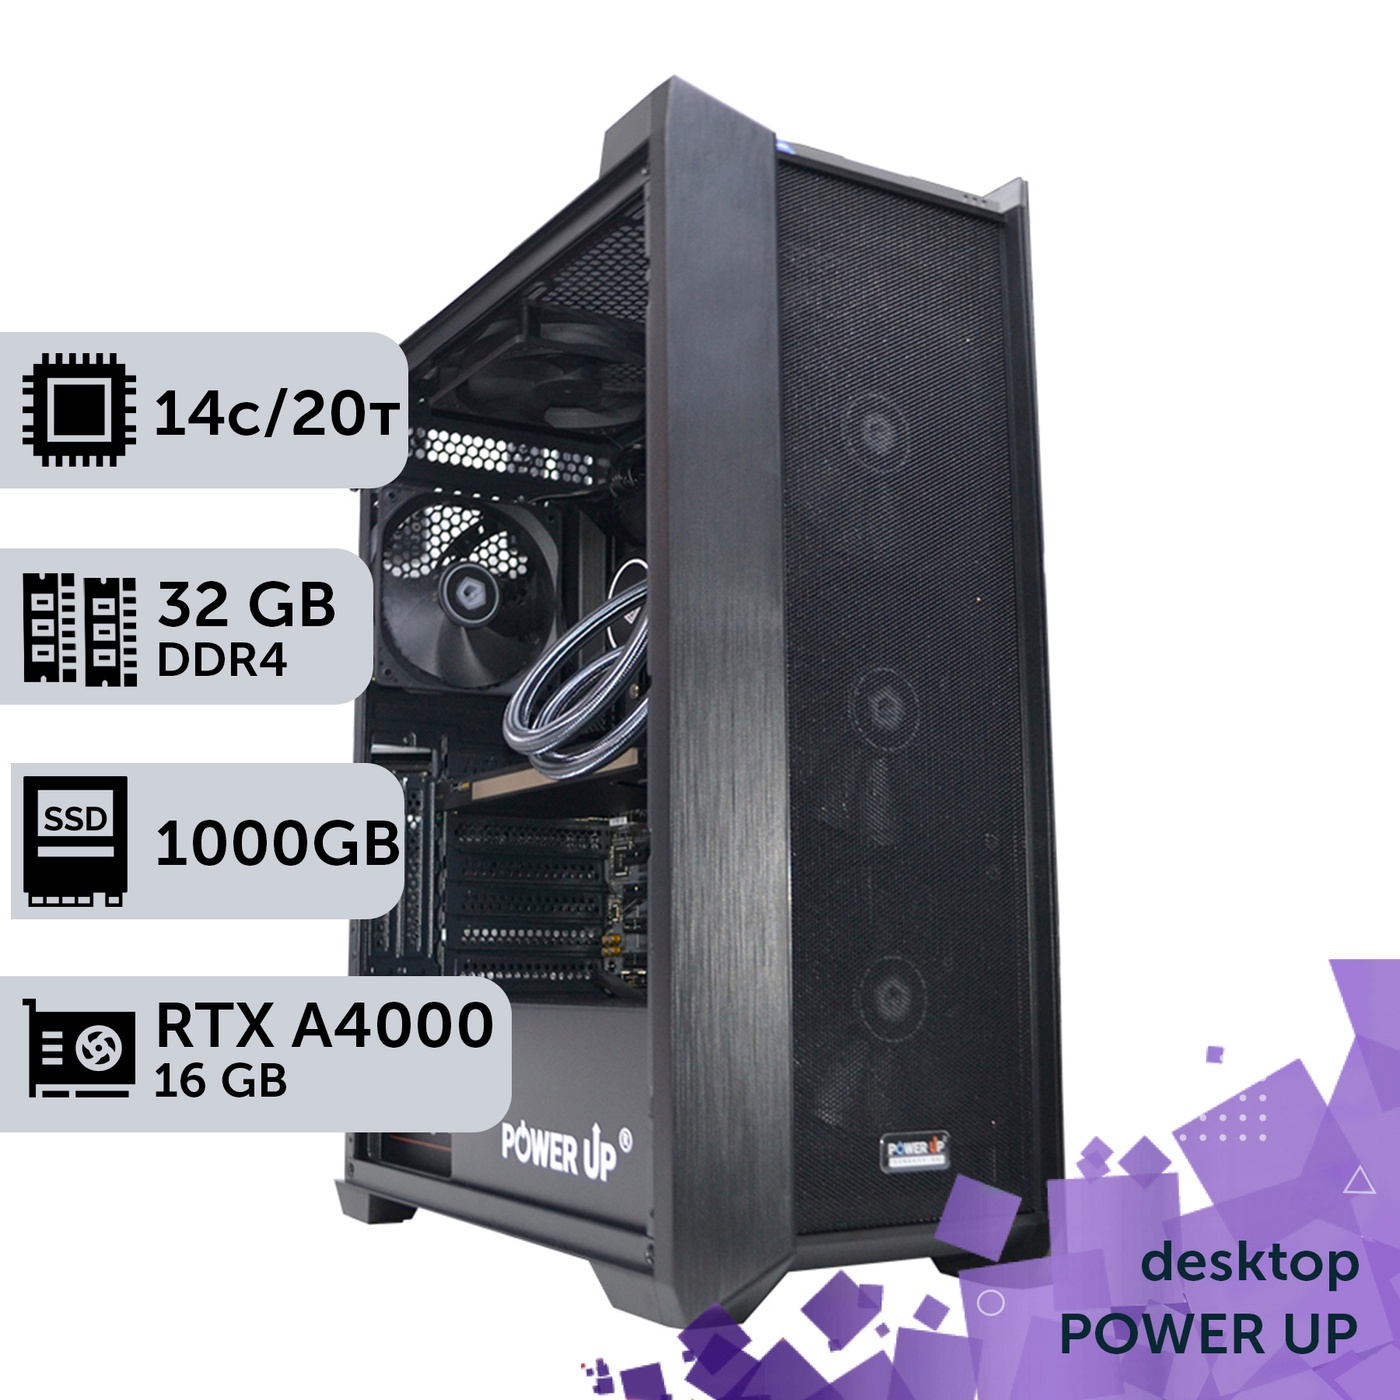 Рабочая станция PowerUp Desktop #235 Core i5 13600K/32 GB/SSD 1TB/NVIDIA Quadro RTX A4000 16GB